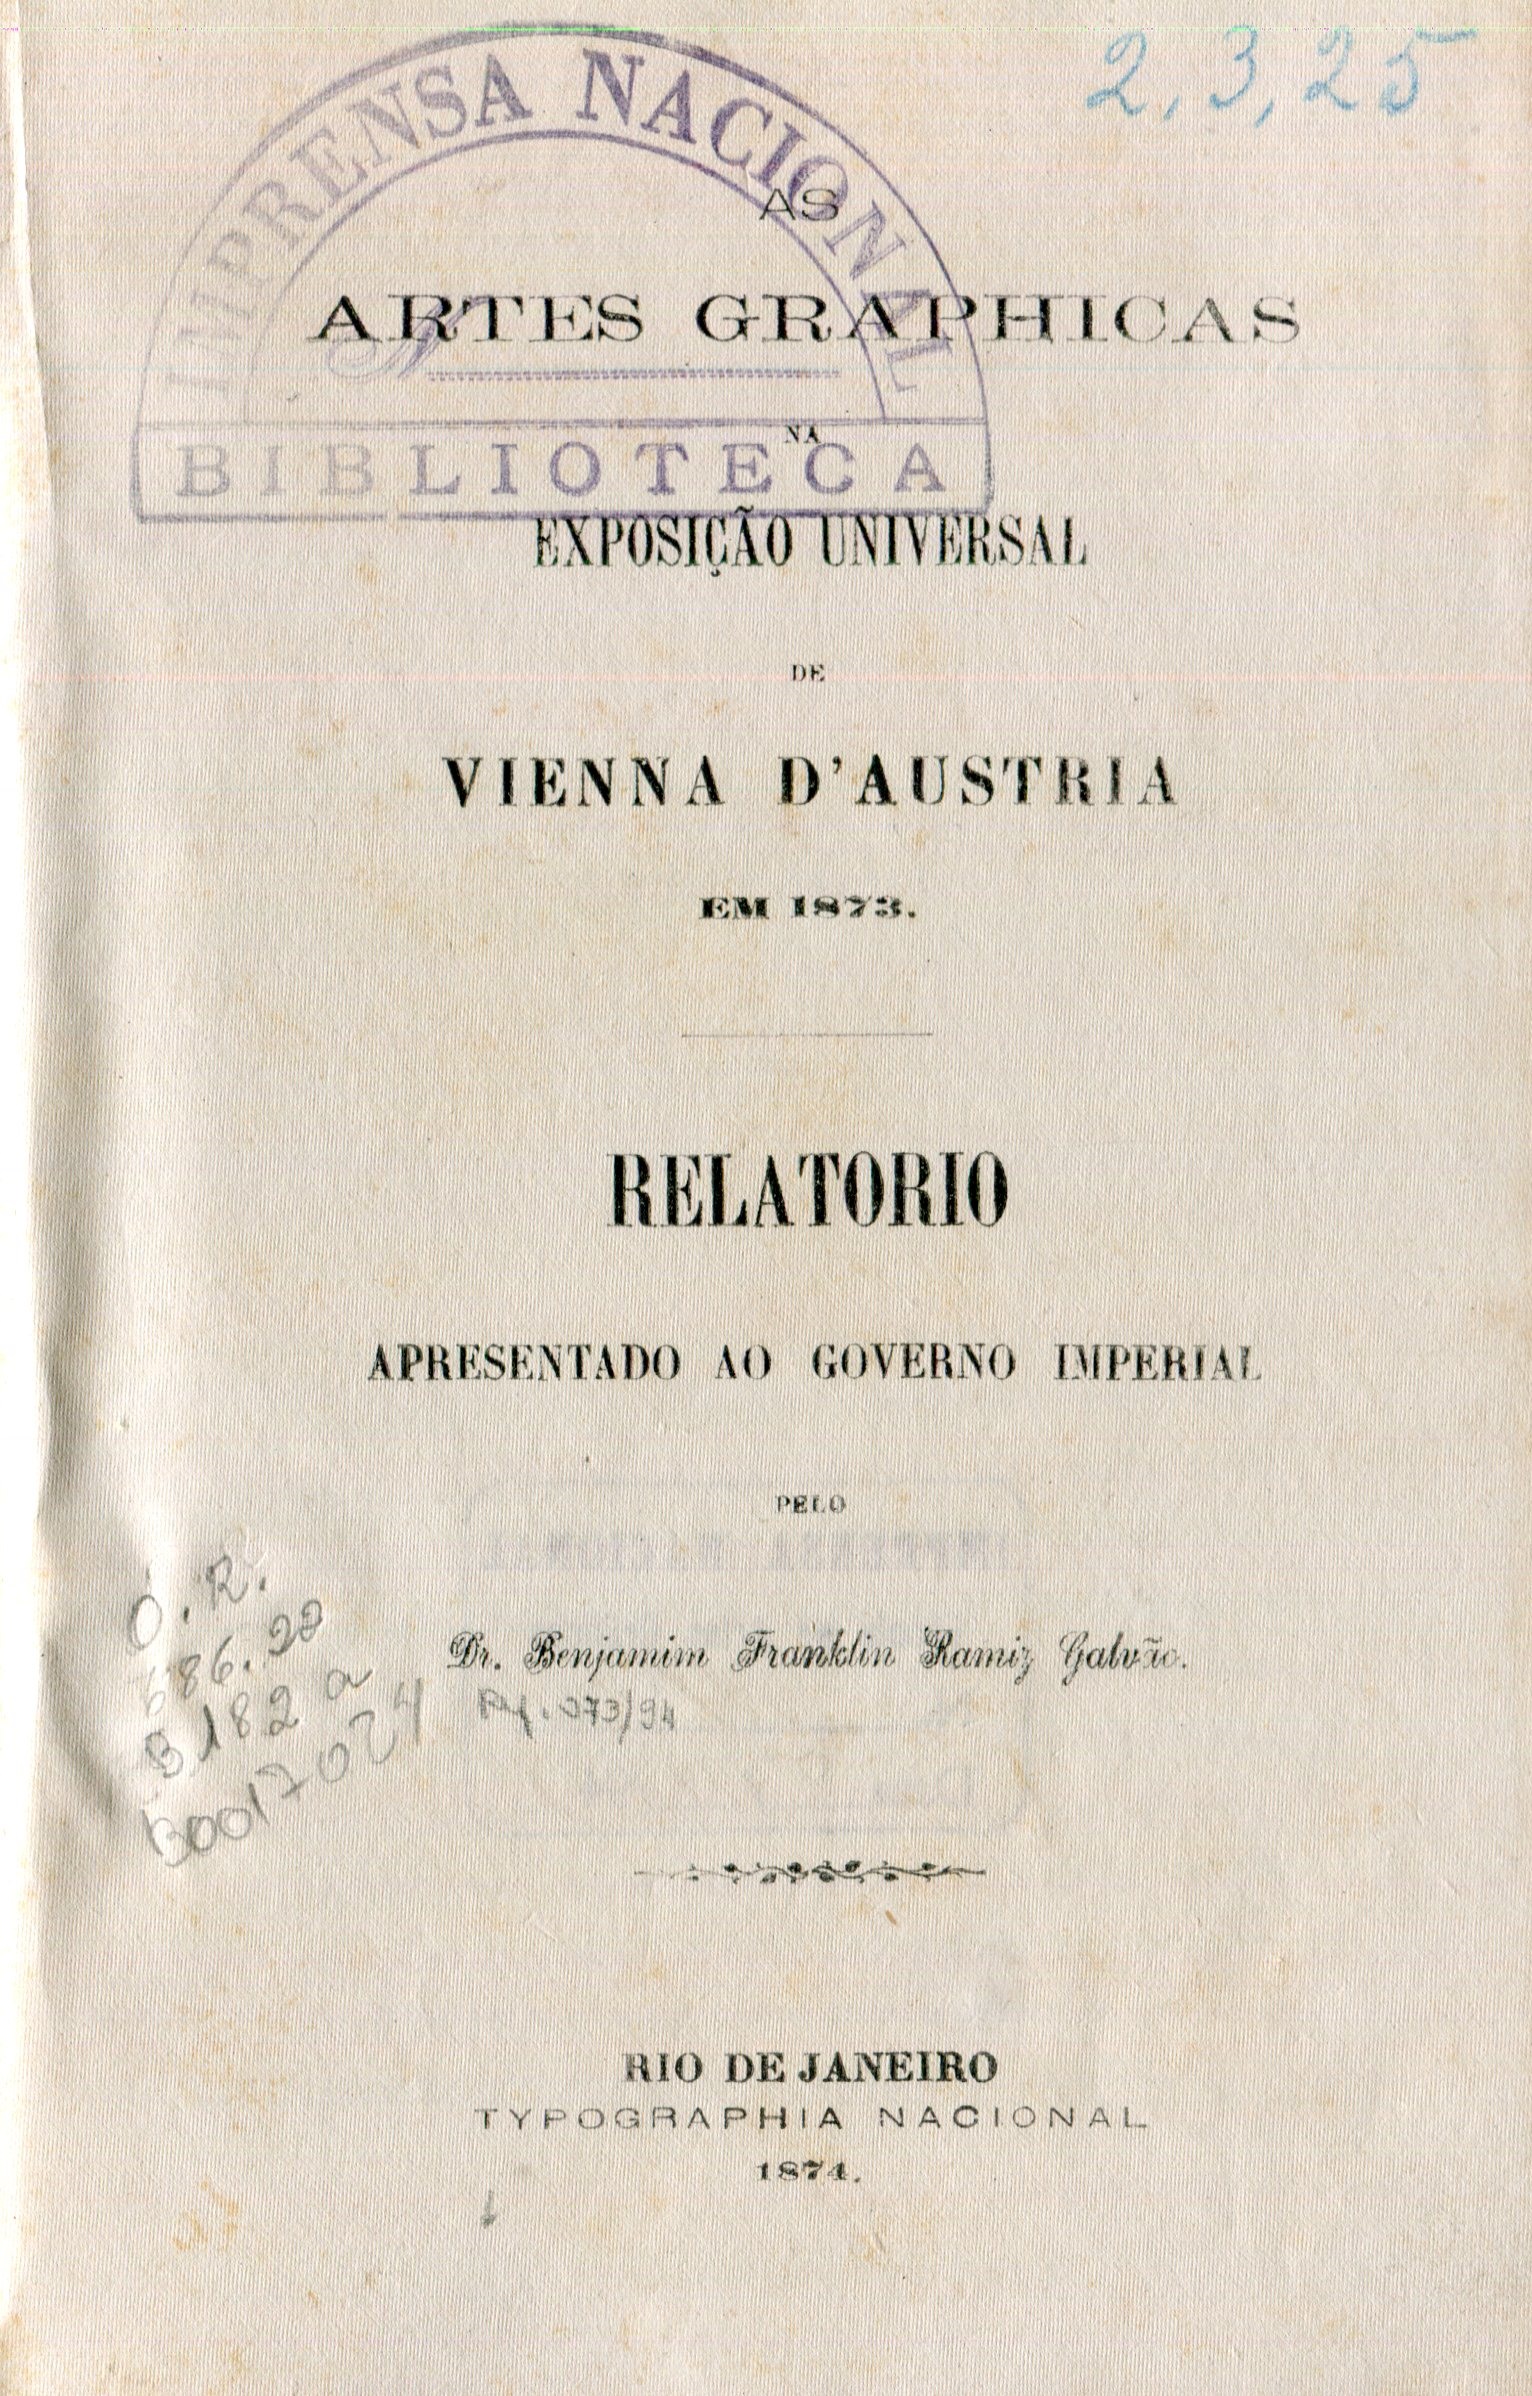 Capa do Livro Artes Graphicas na Exposição Universal de Vienna D'Austria em 1873: Relatorio apresentado ao Governo Imperial